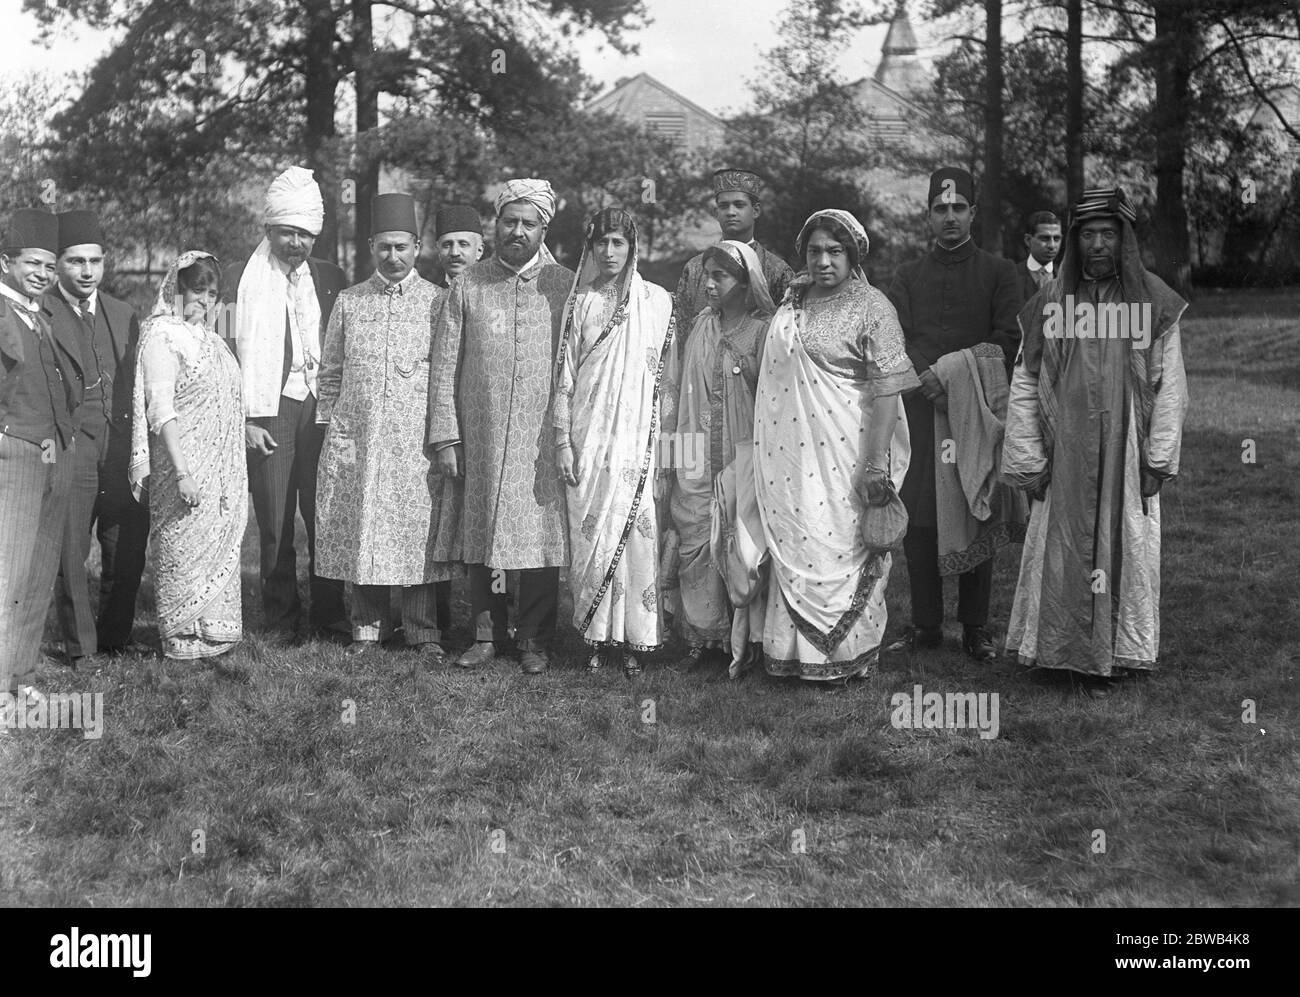 Adoratori durante il Festival dell'Eid alla Moschea di Woking, Surrey . 29 settembre 1917 la moschea di Shah Jahan fu la prima moschea costruita appositamente in Europa al di fuori della Spagna musulmana Foto Stock